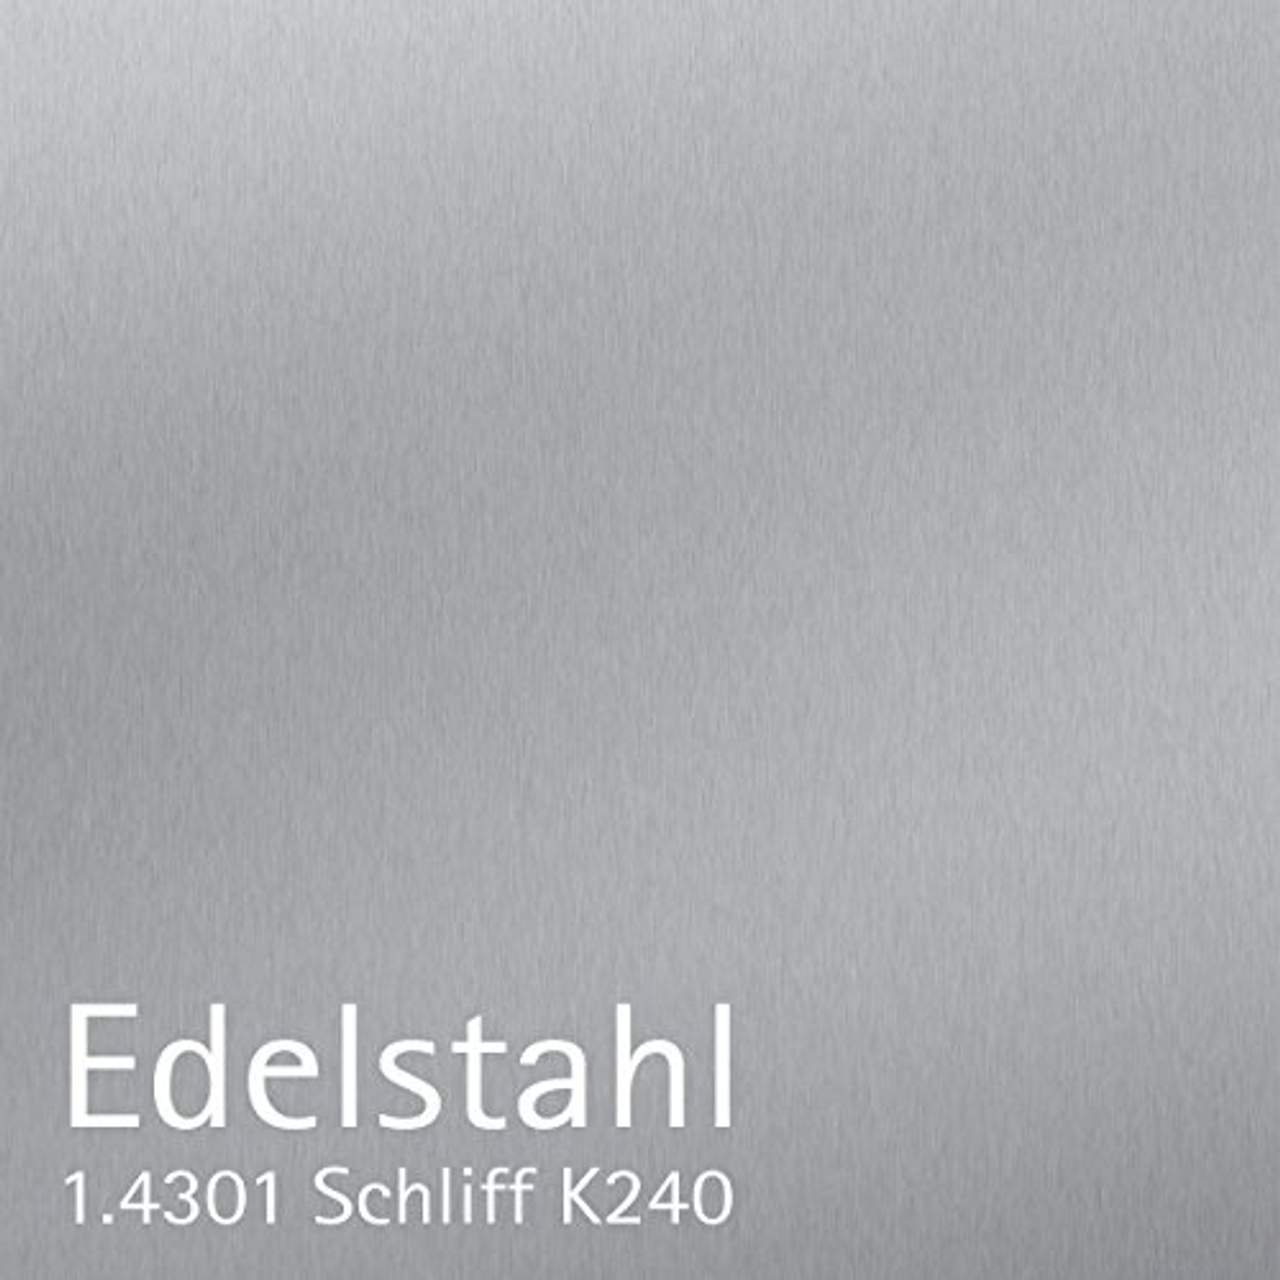 z-e-d Briefkasten Edelstahl